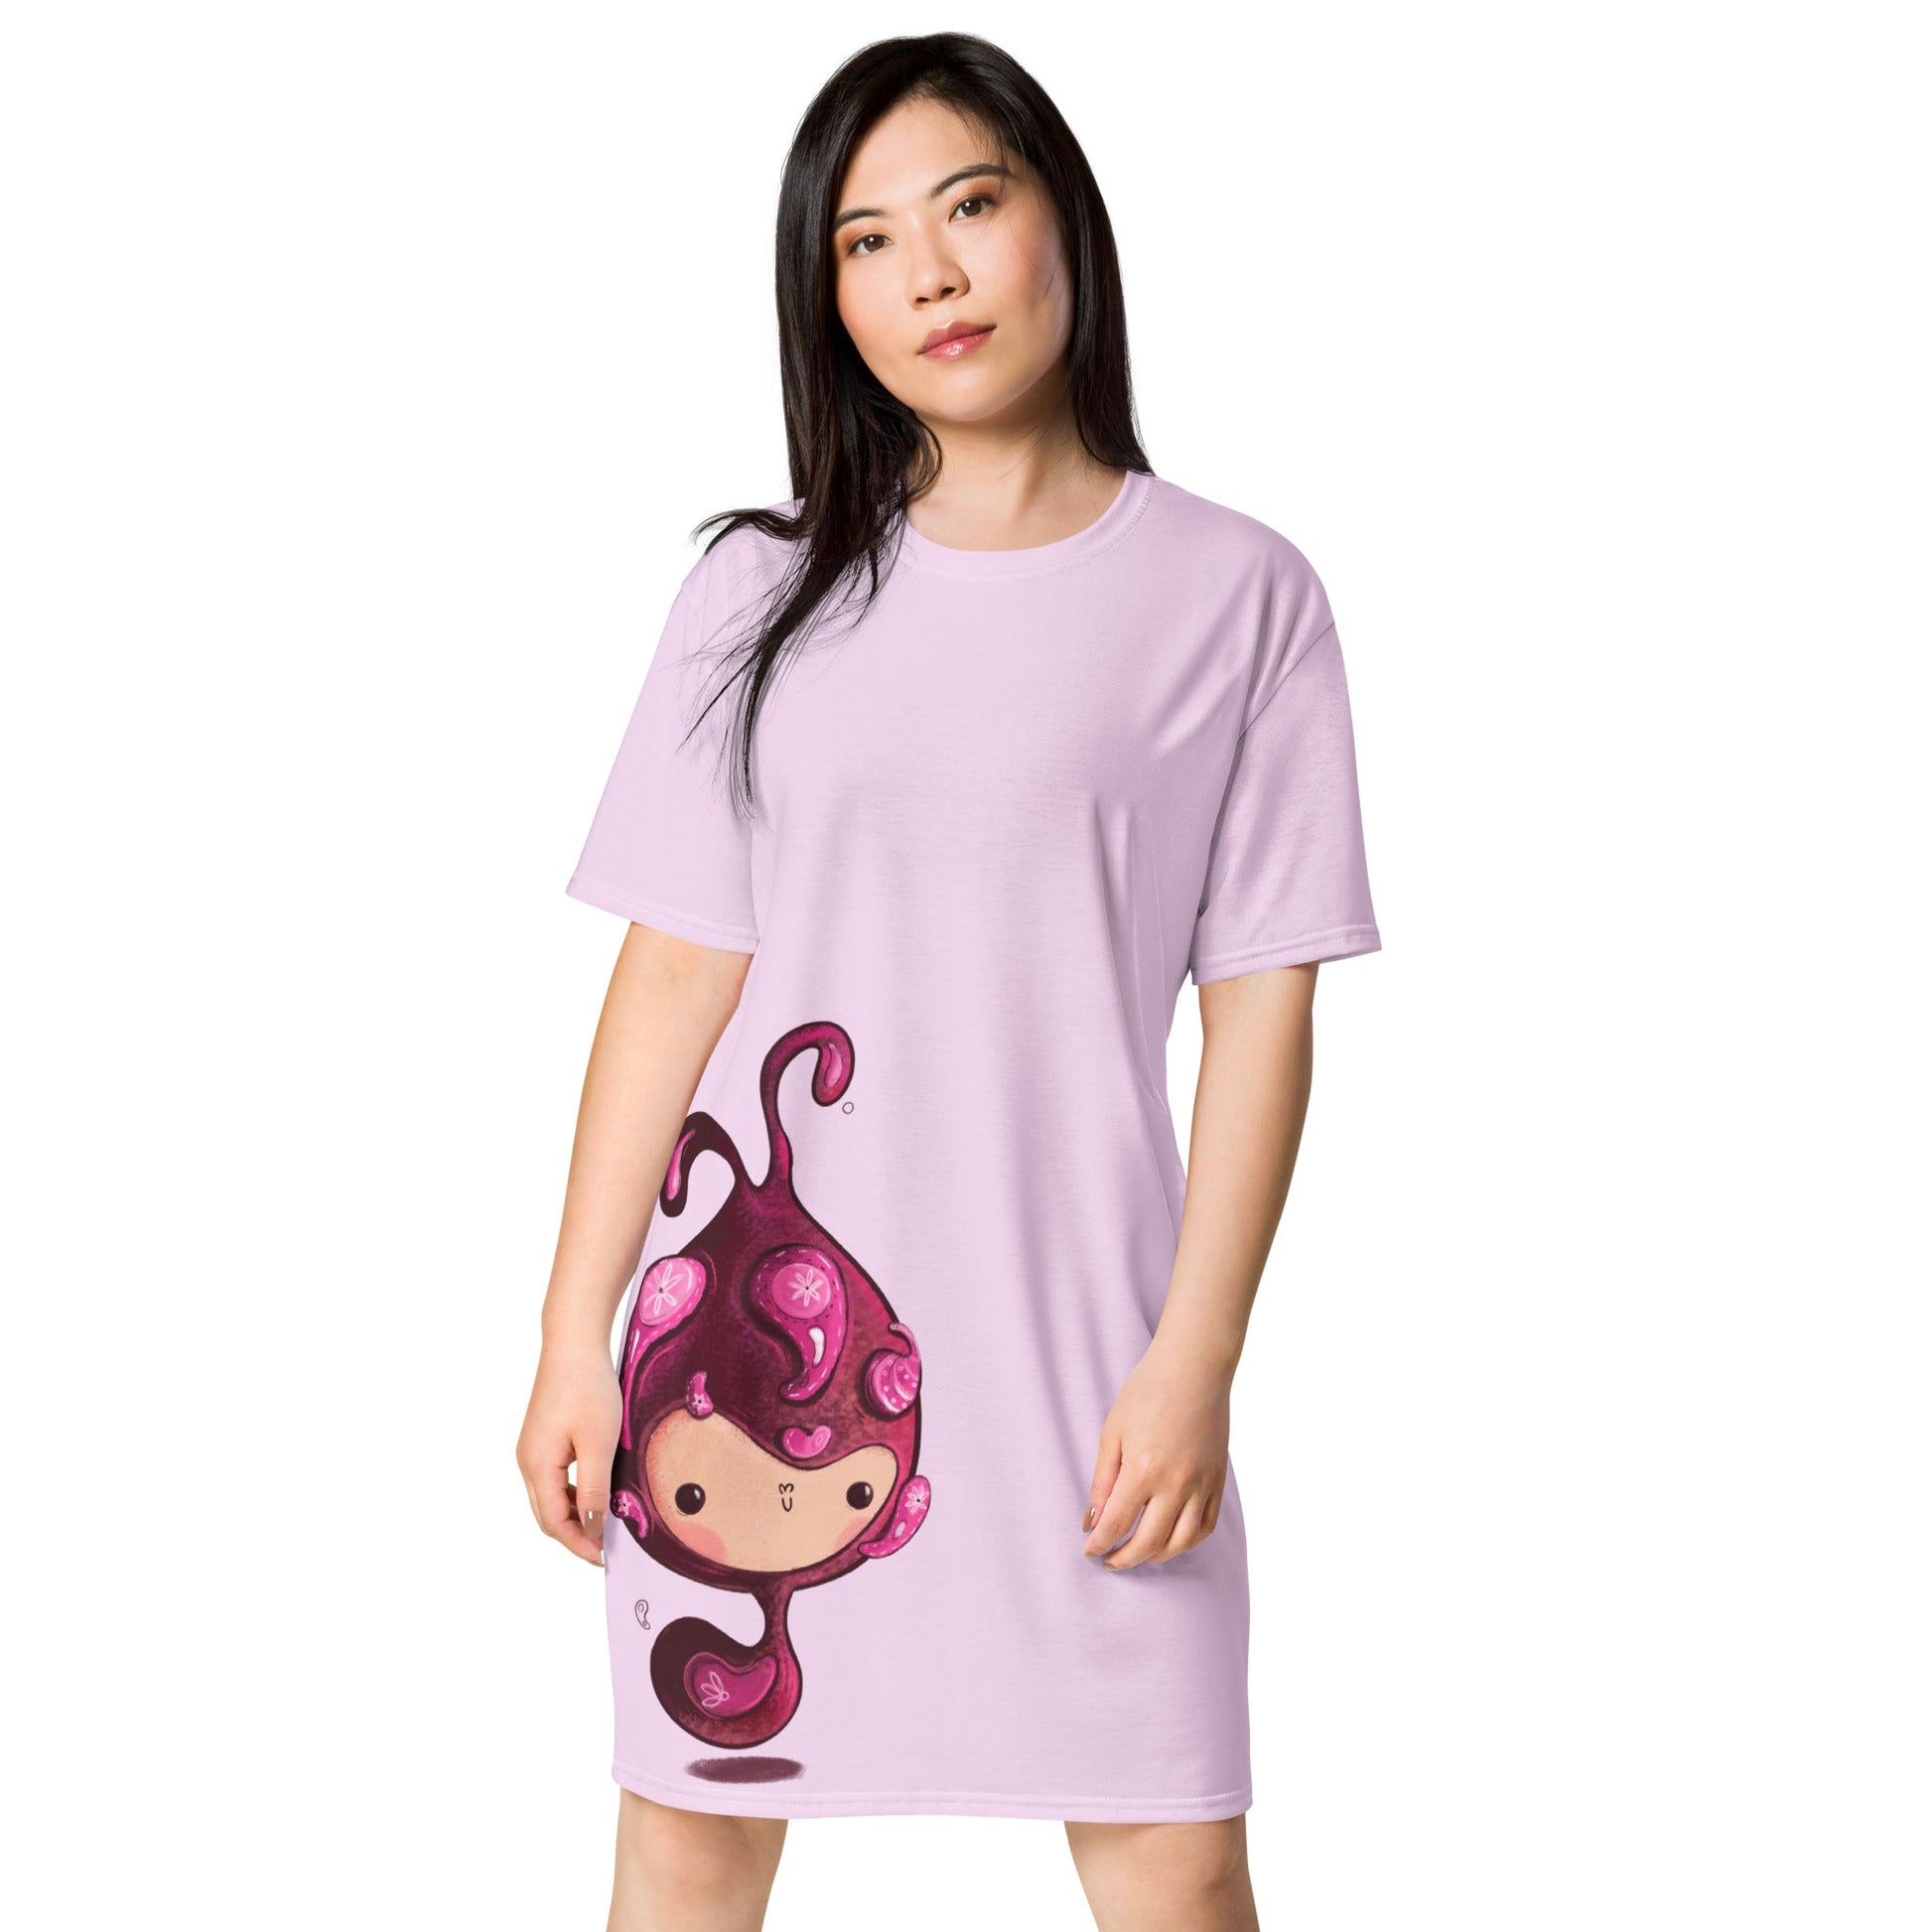 THE LITTLE SNAIL Women's T-Shirt Dress - Bonotee